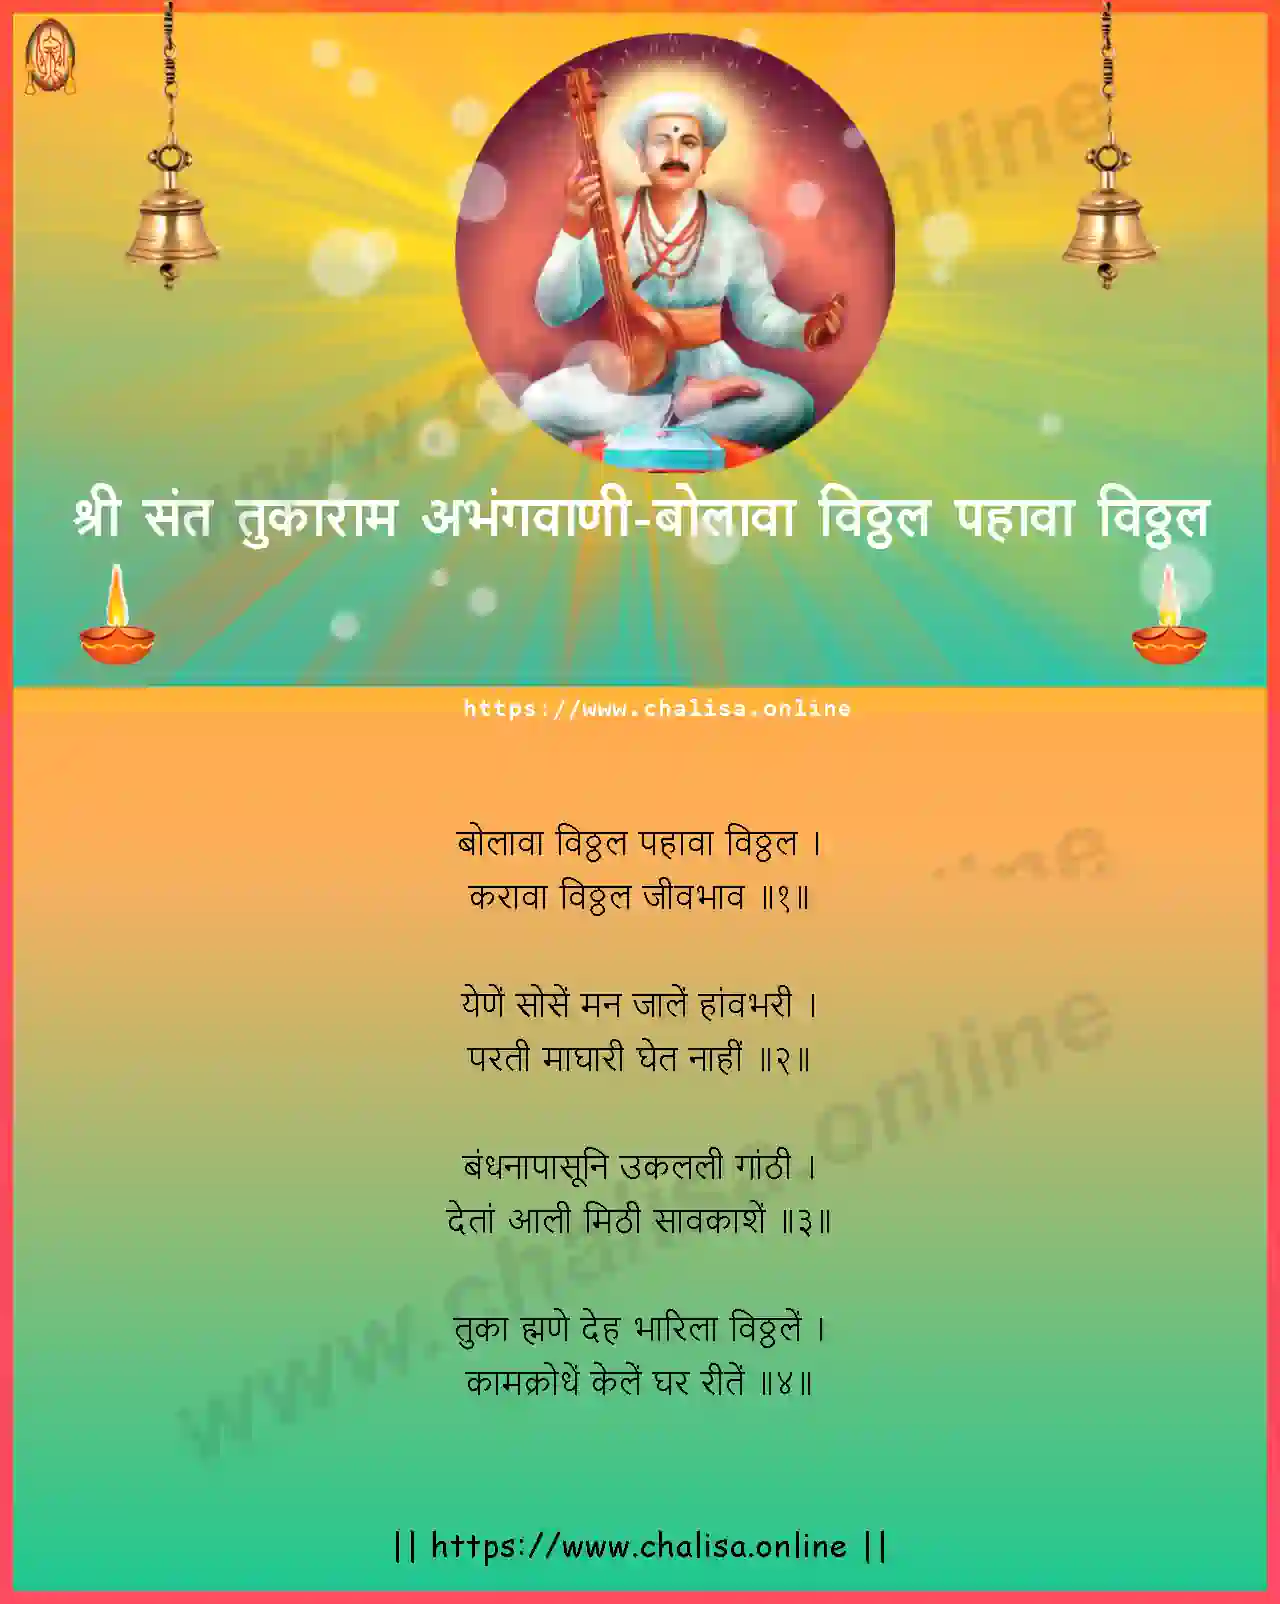 bolava-vitthal-pahava-shri-sant-tukaram-abhang-marathi-lyrics-download